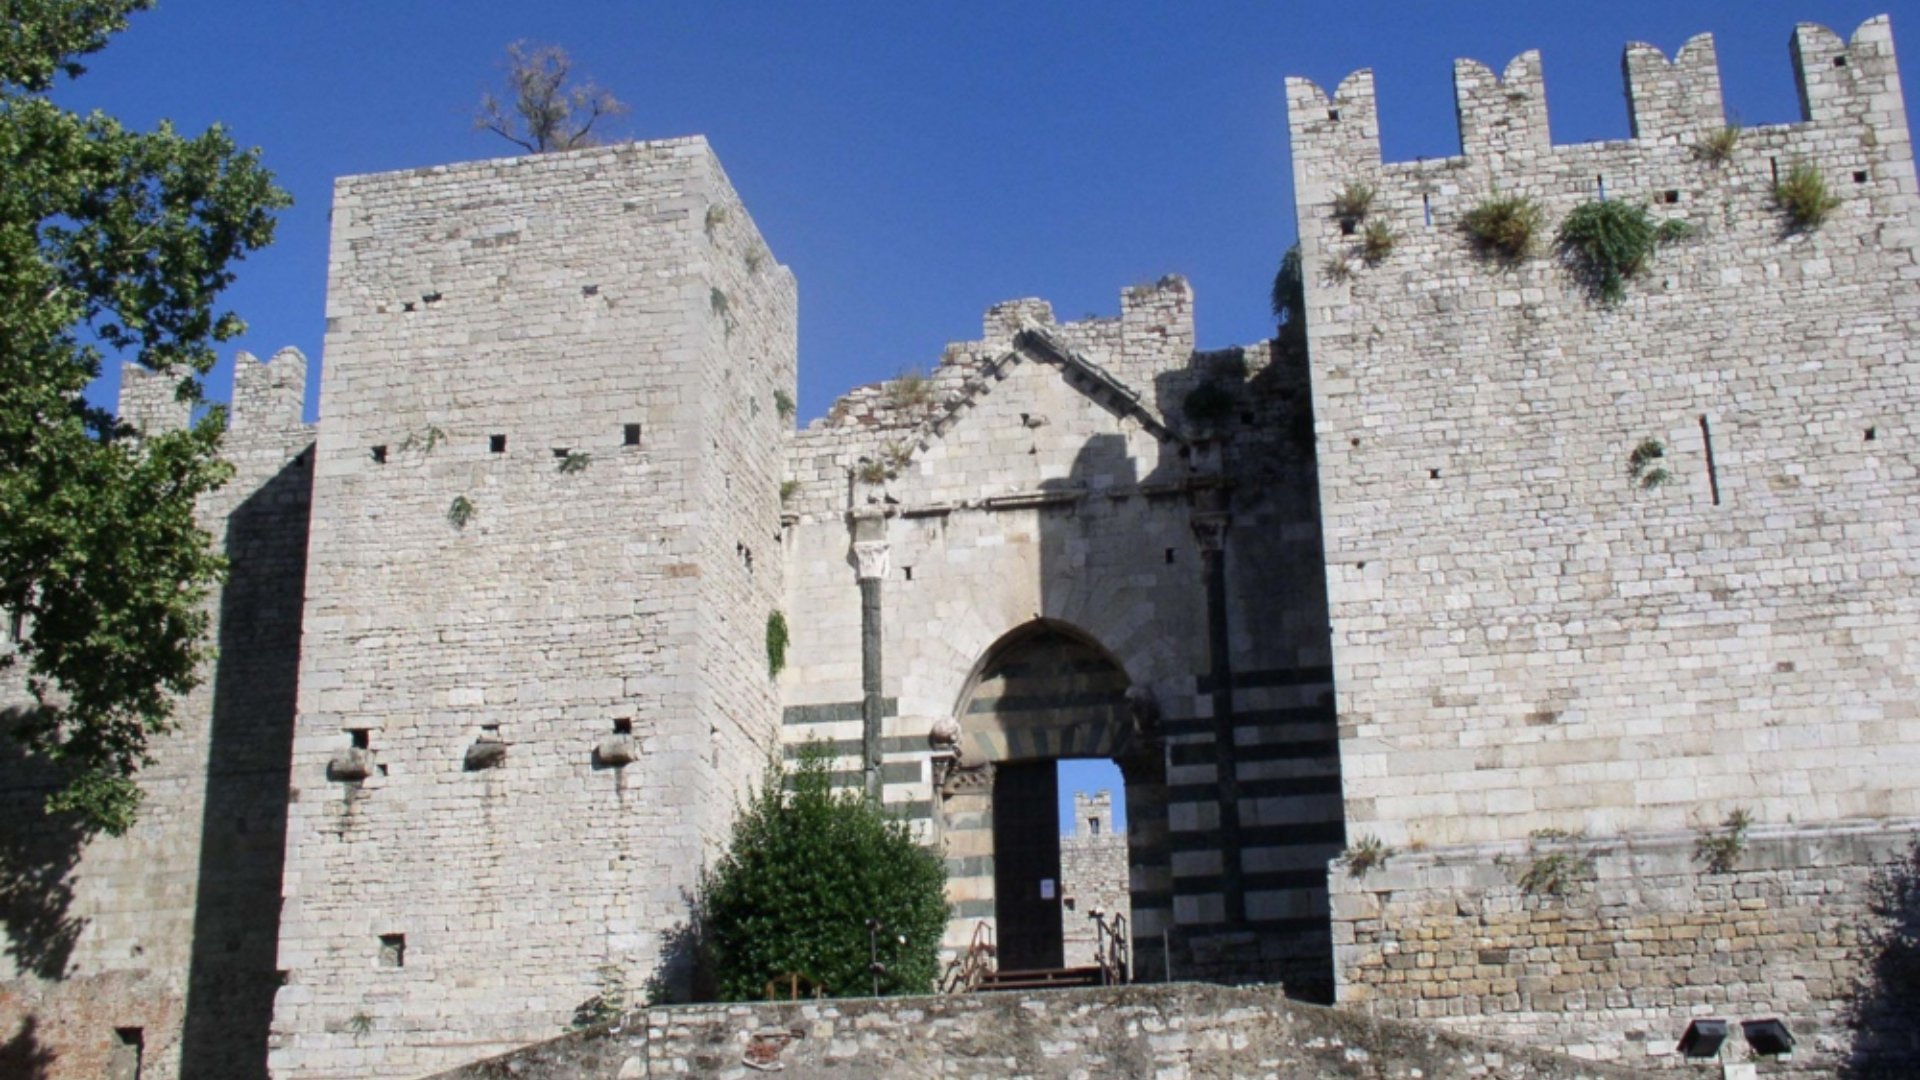 Château de l'Empereur de Prato